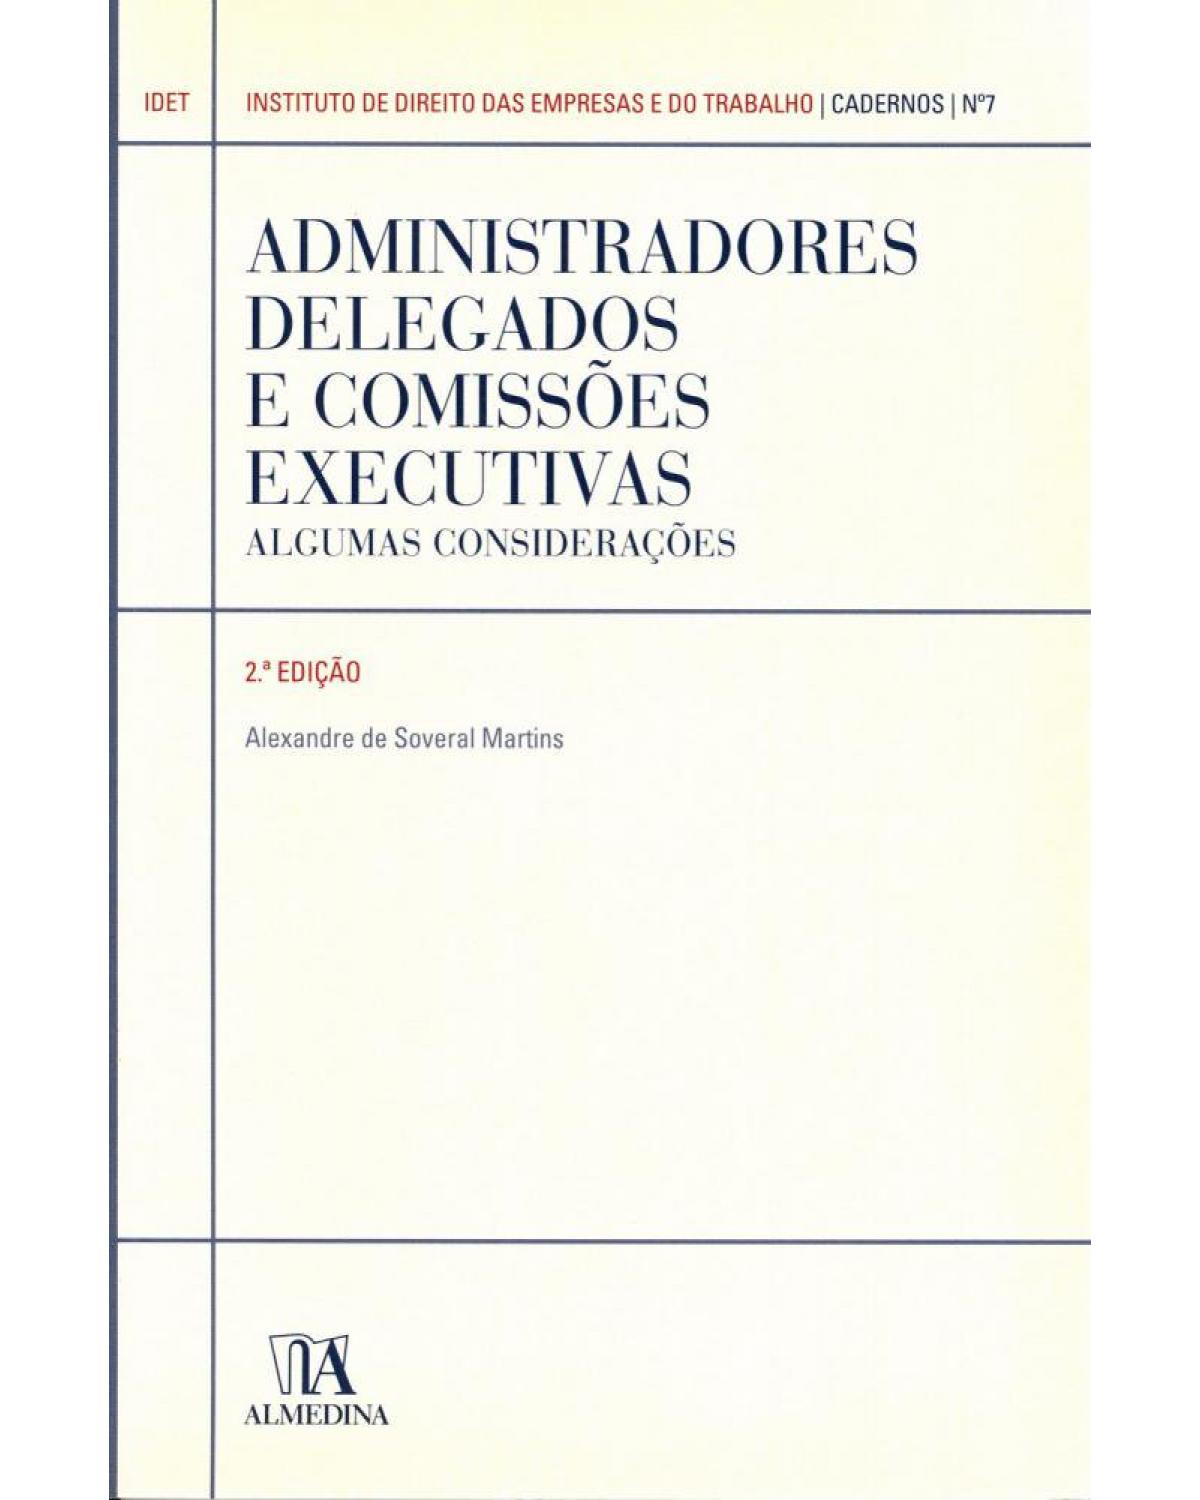 Administradores delegados e comissões executivas: algumas considerações - 2ª Edição | 2011